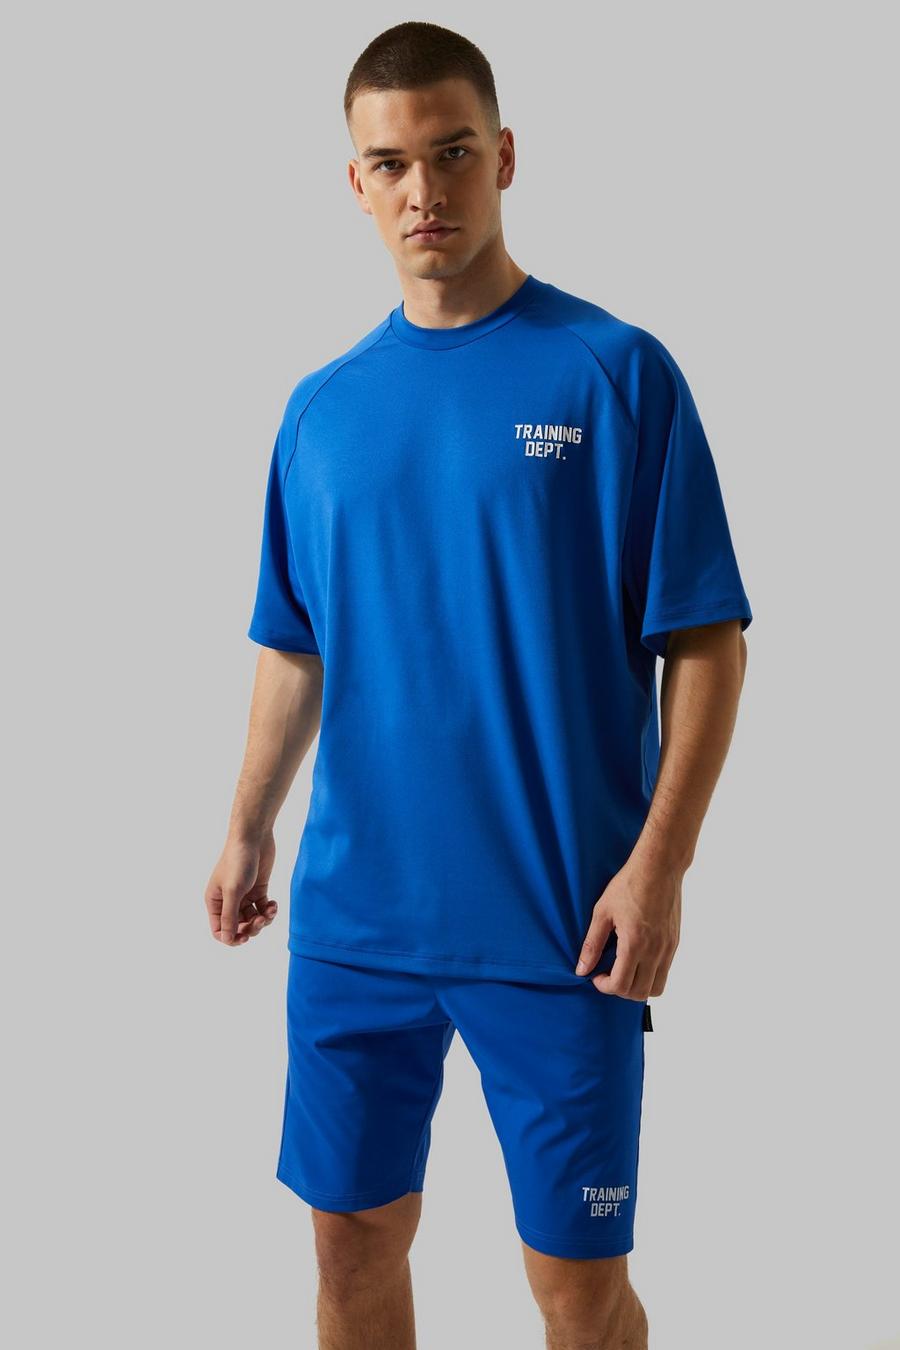 Cobalt blå Tall Man Active Training Dept Boxy  T-shirt 